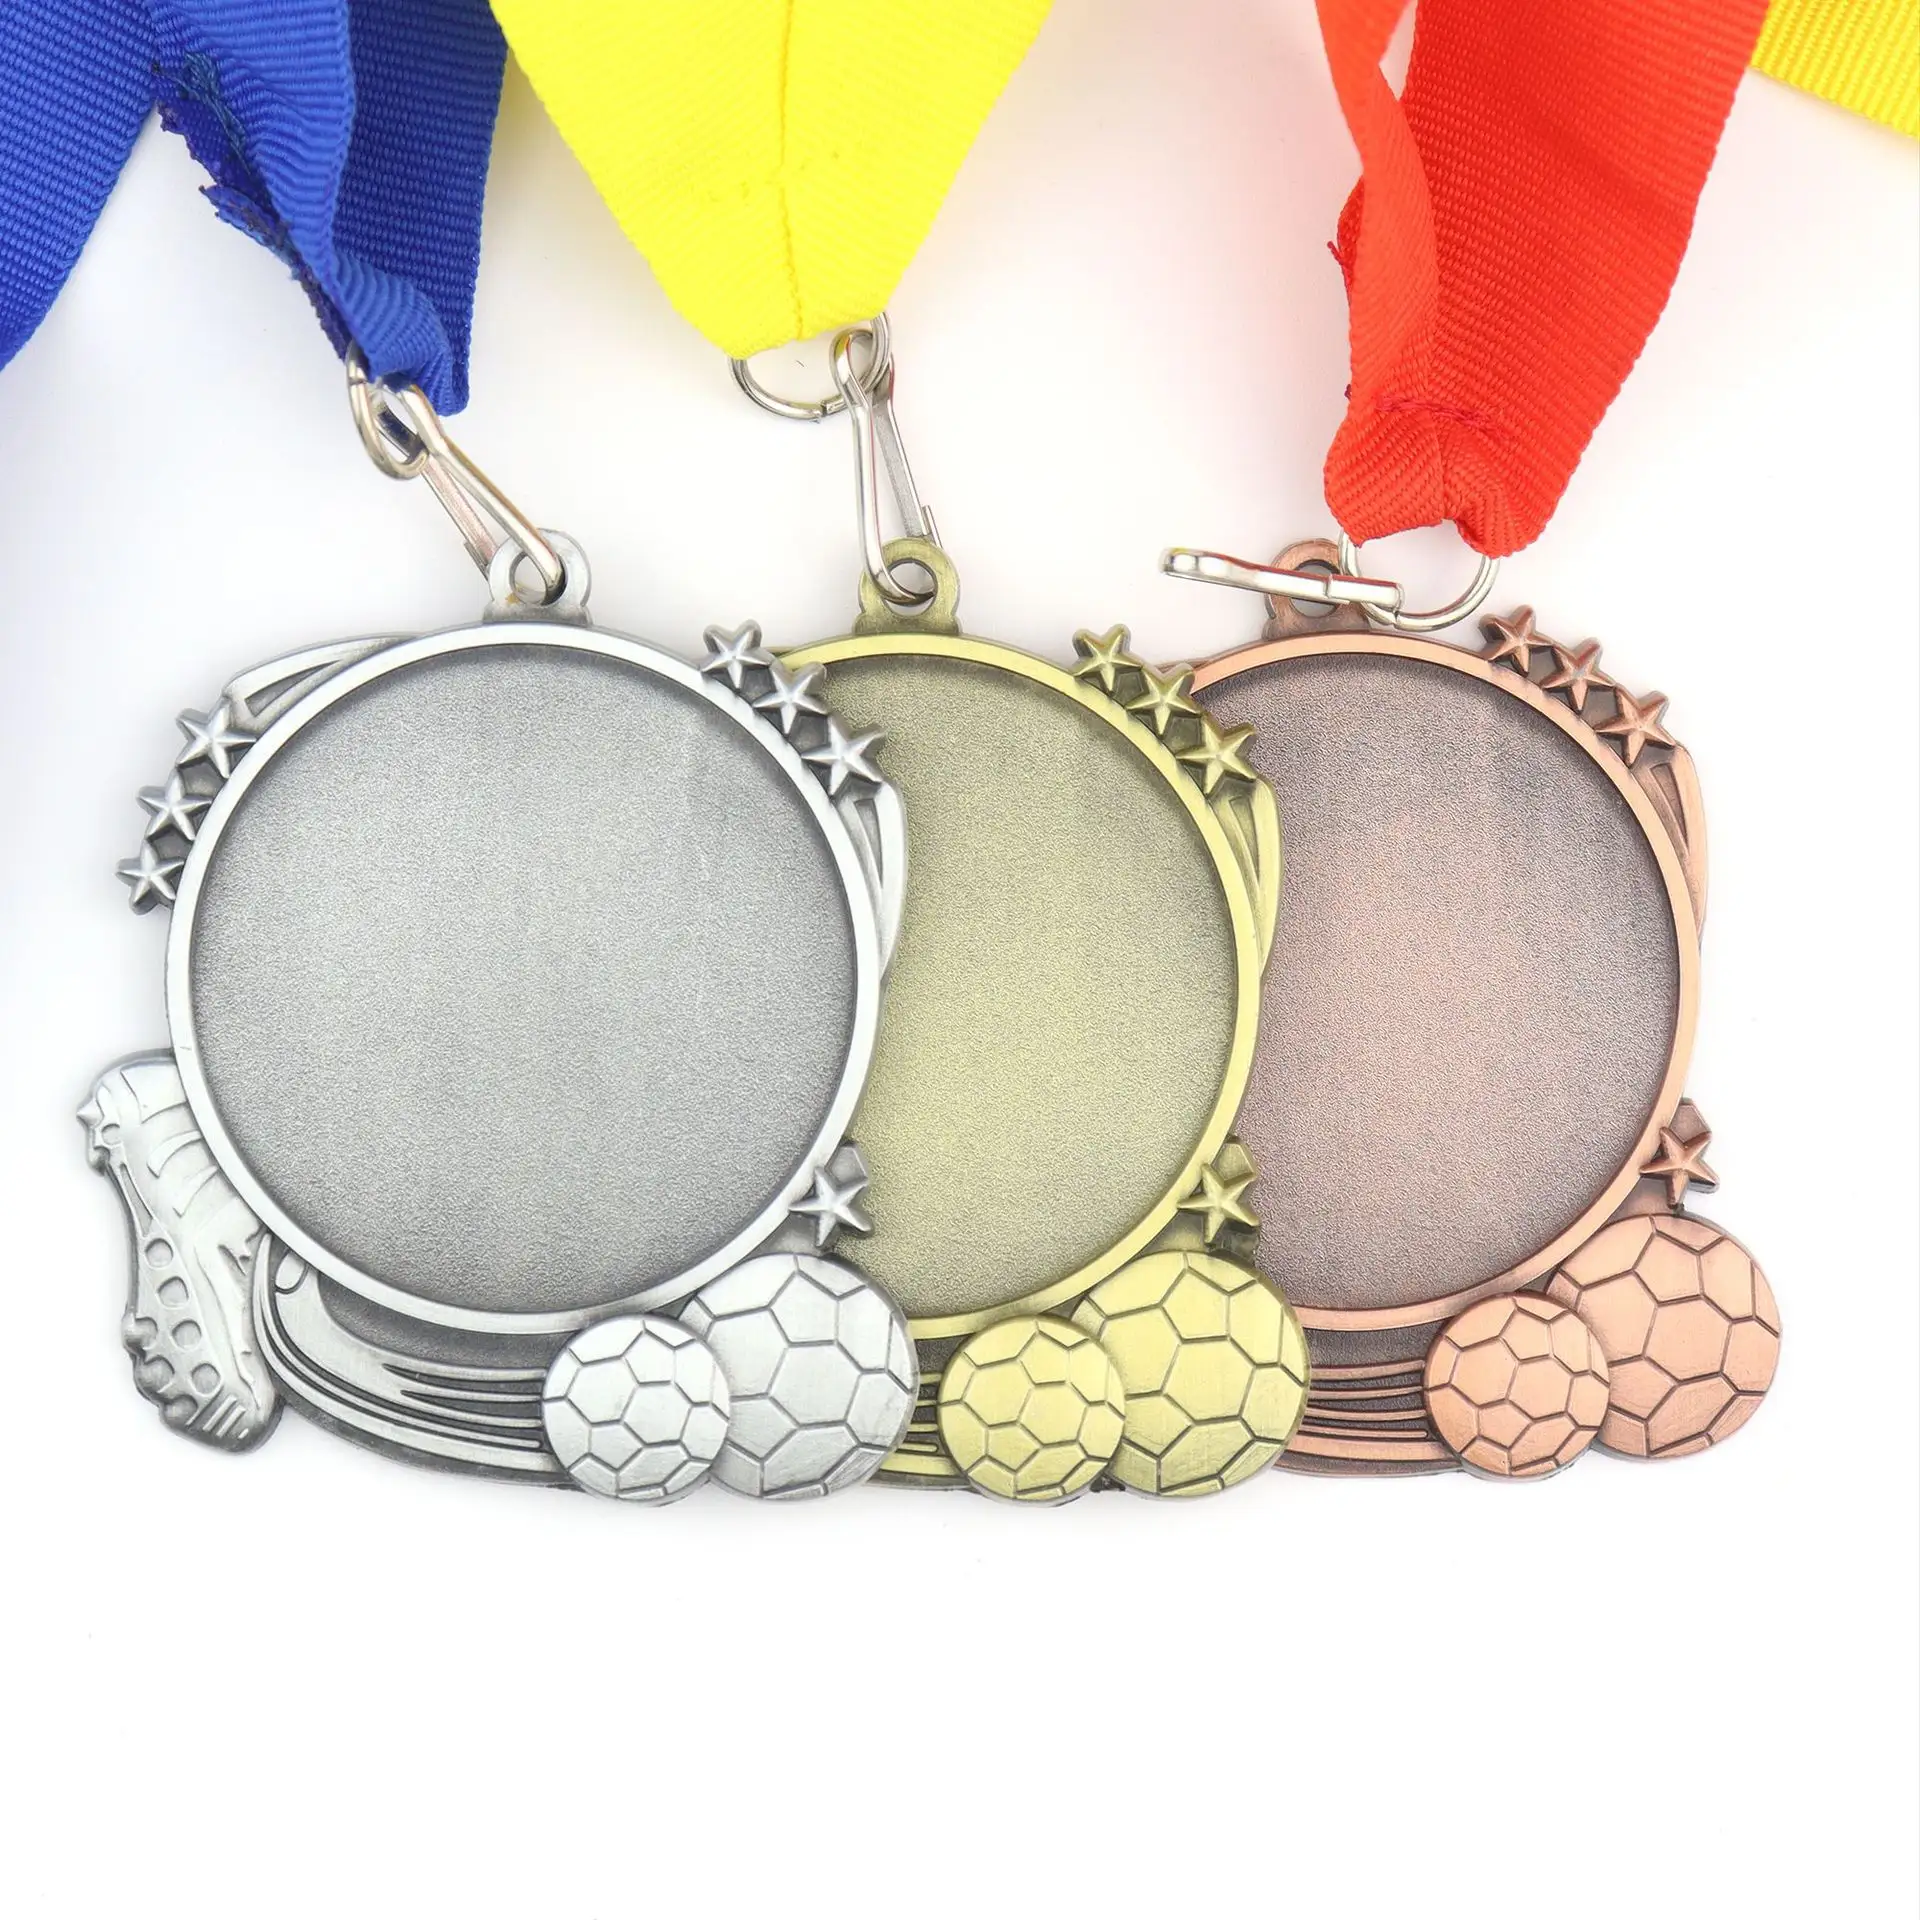 サッカーカップのトロフィーとメダルを刻印した独占デザインのサッカーメダルスポーツメダル